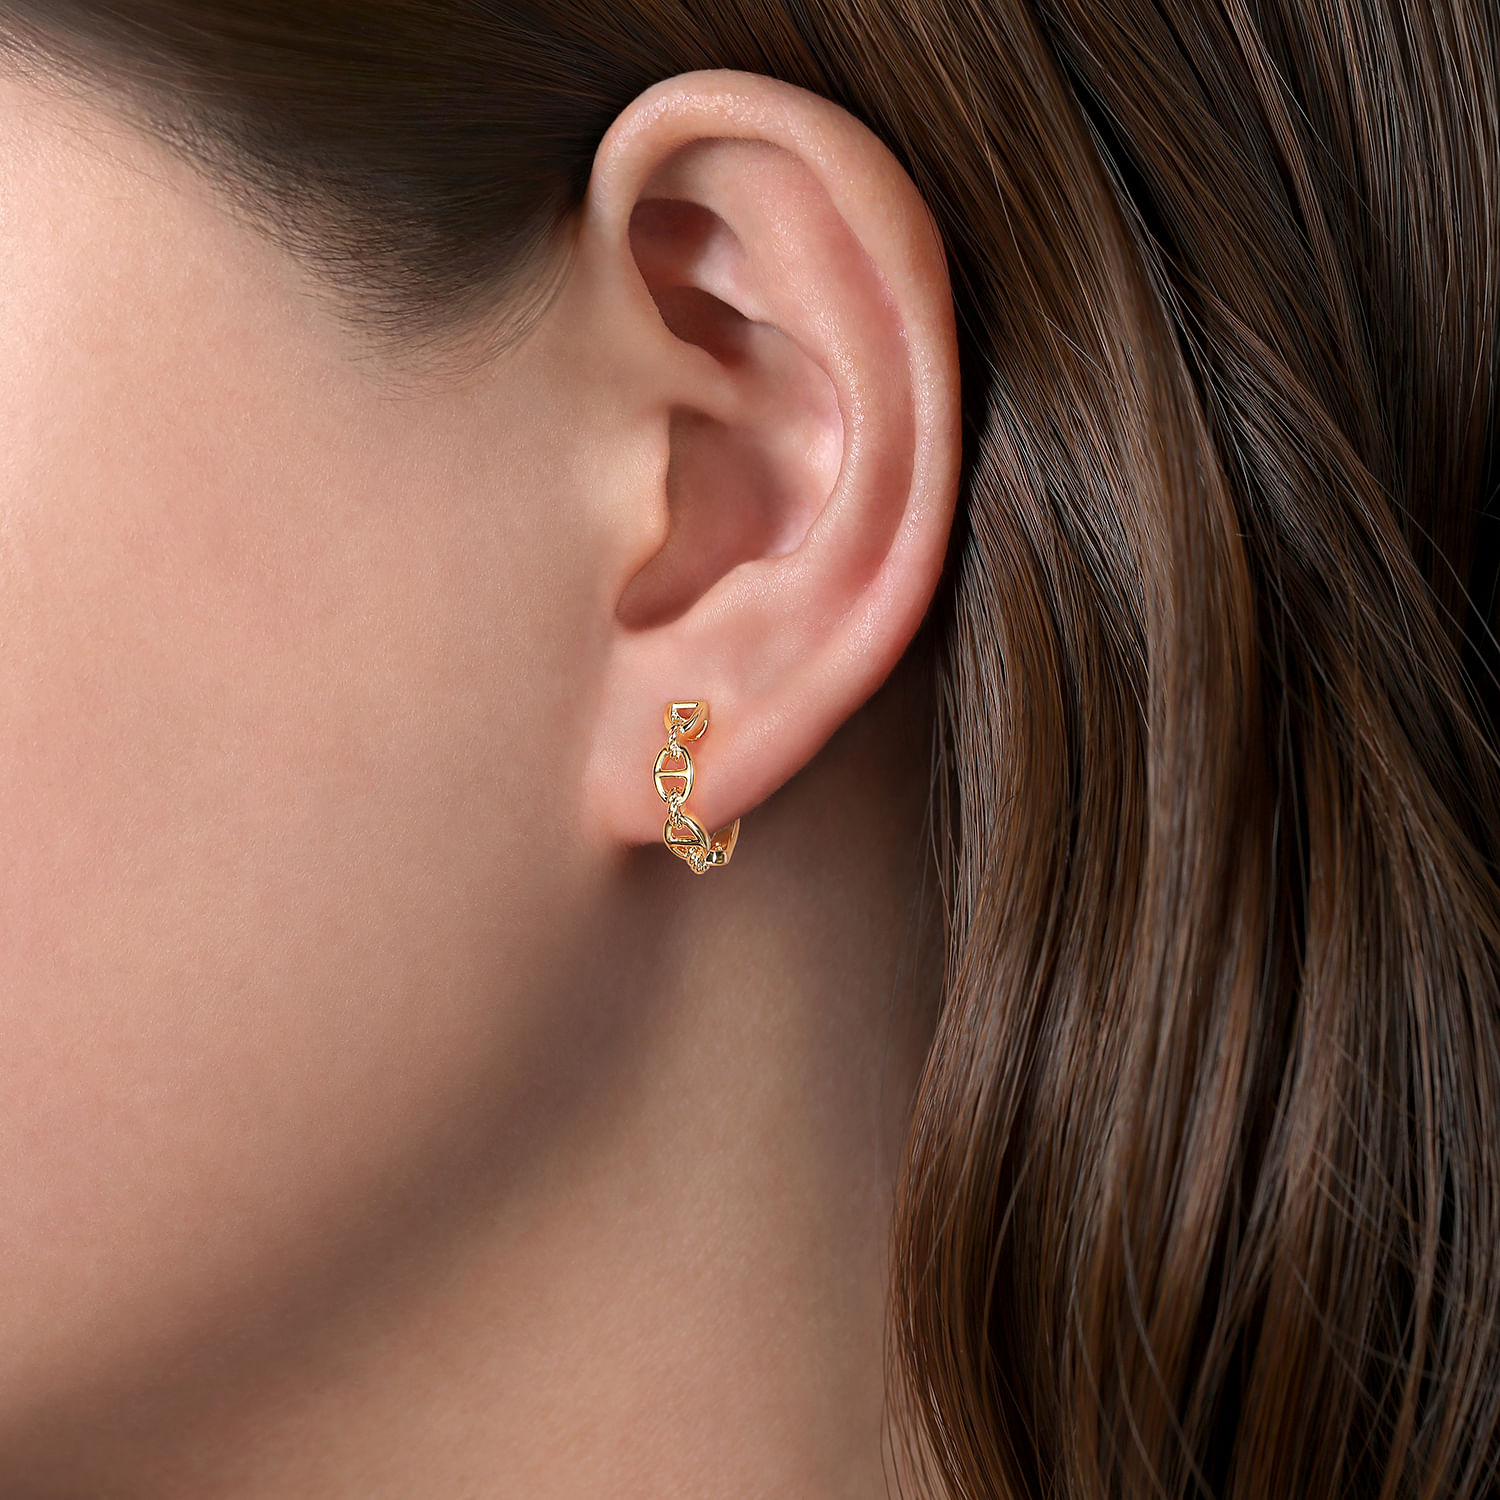 14K Yellow Gold 15mm Chain Pattern Huggie Earrings